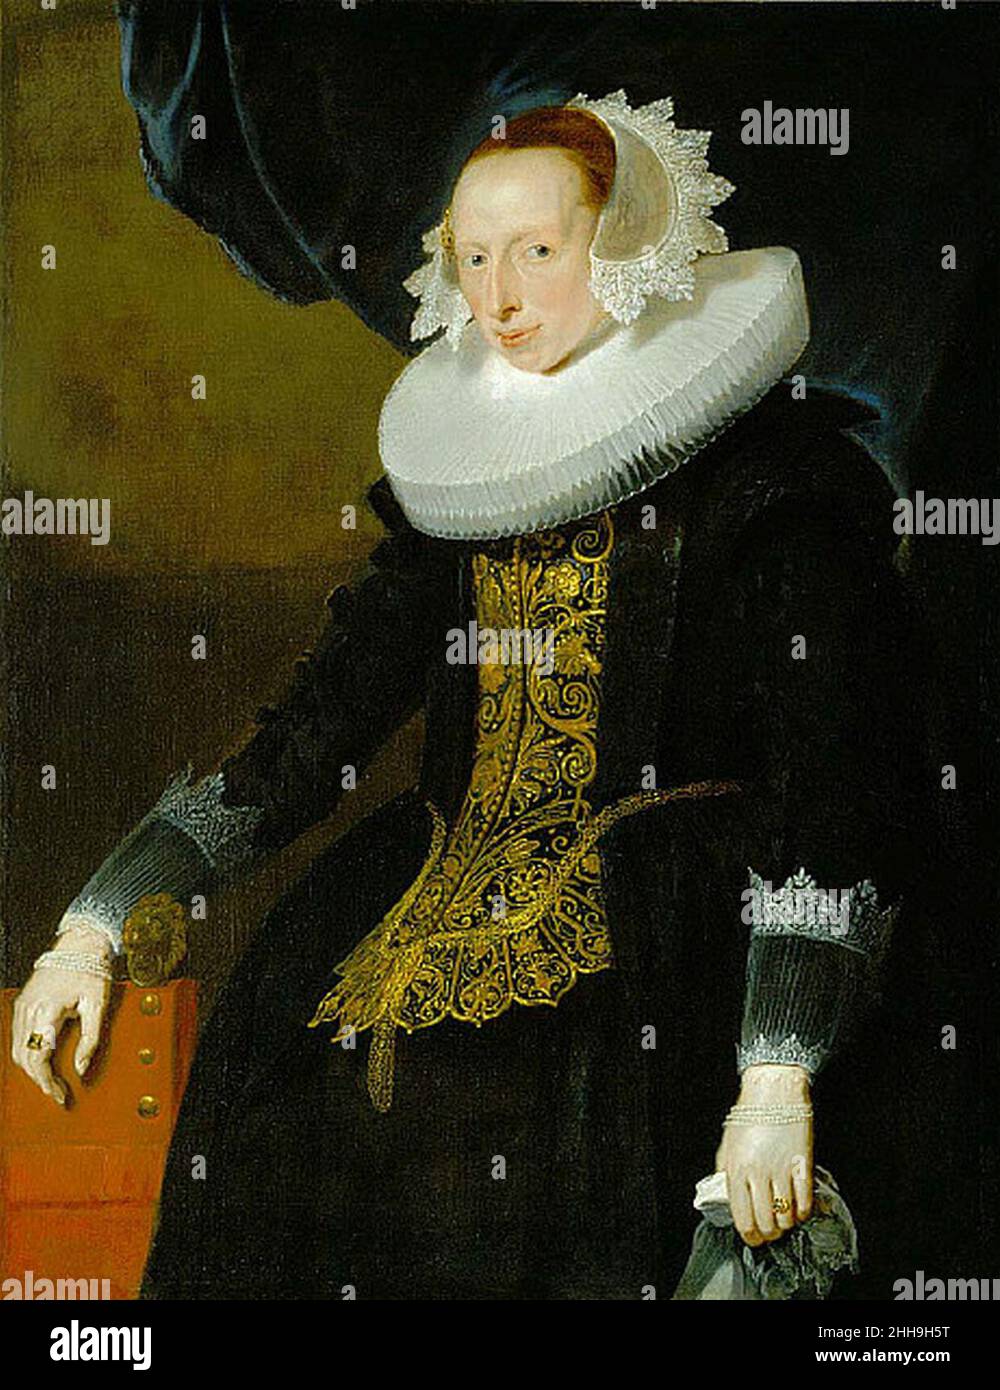 Pieter Claesz. Soutman - Portrait of a Woman. Stock Photo